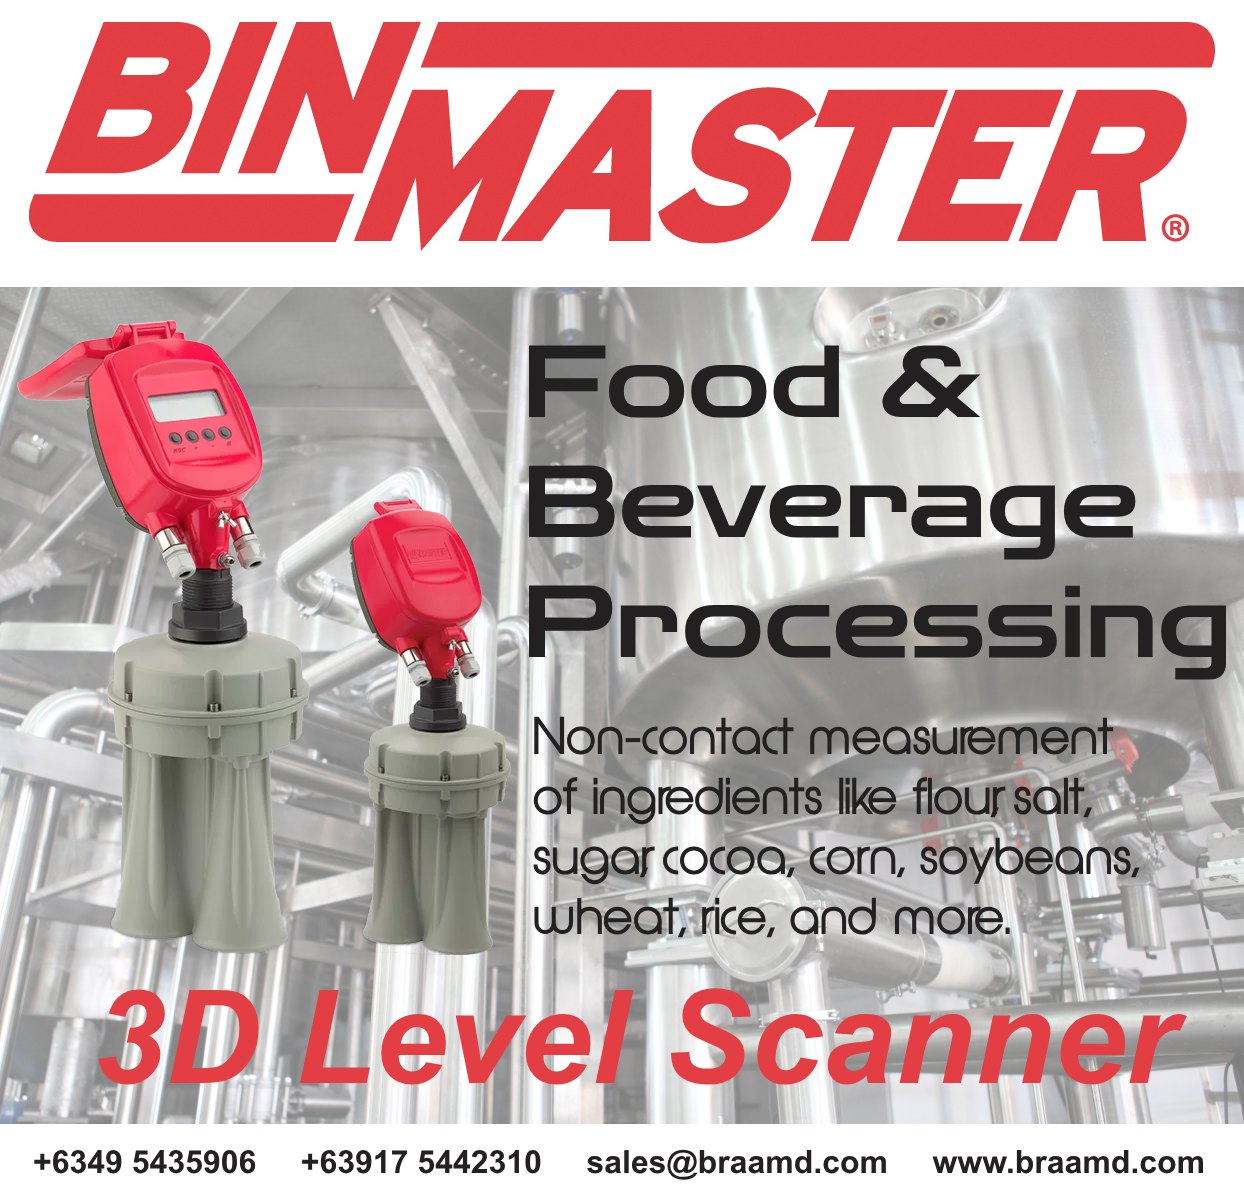 3D Level Scanner for Food & Beverage Processing